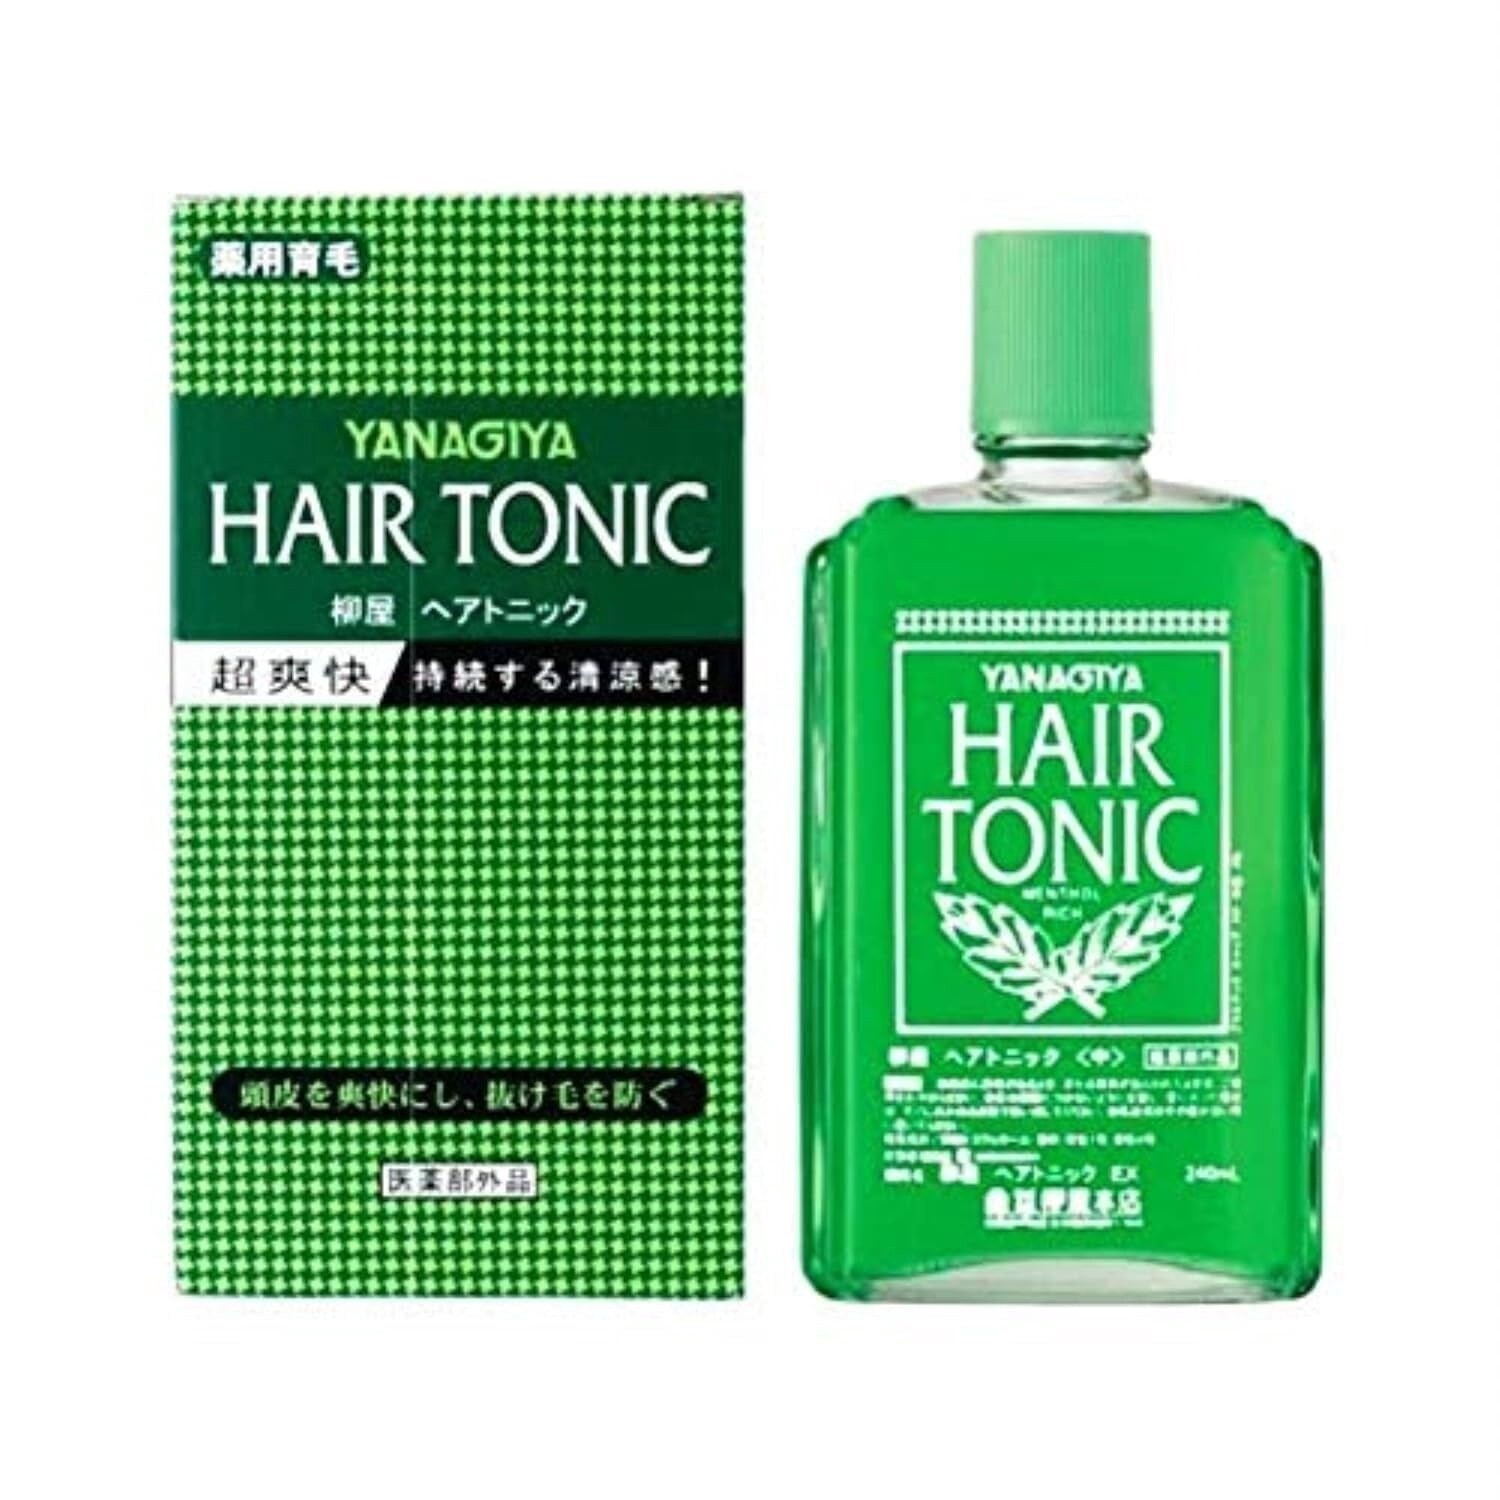 Yanagiya Hair Tonic 240ml